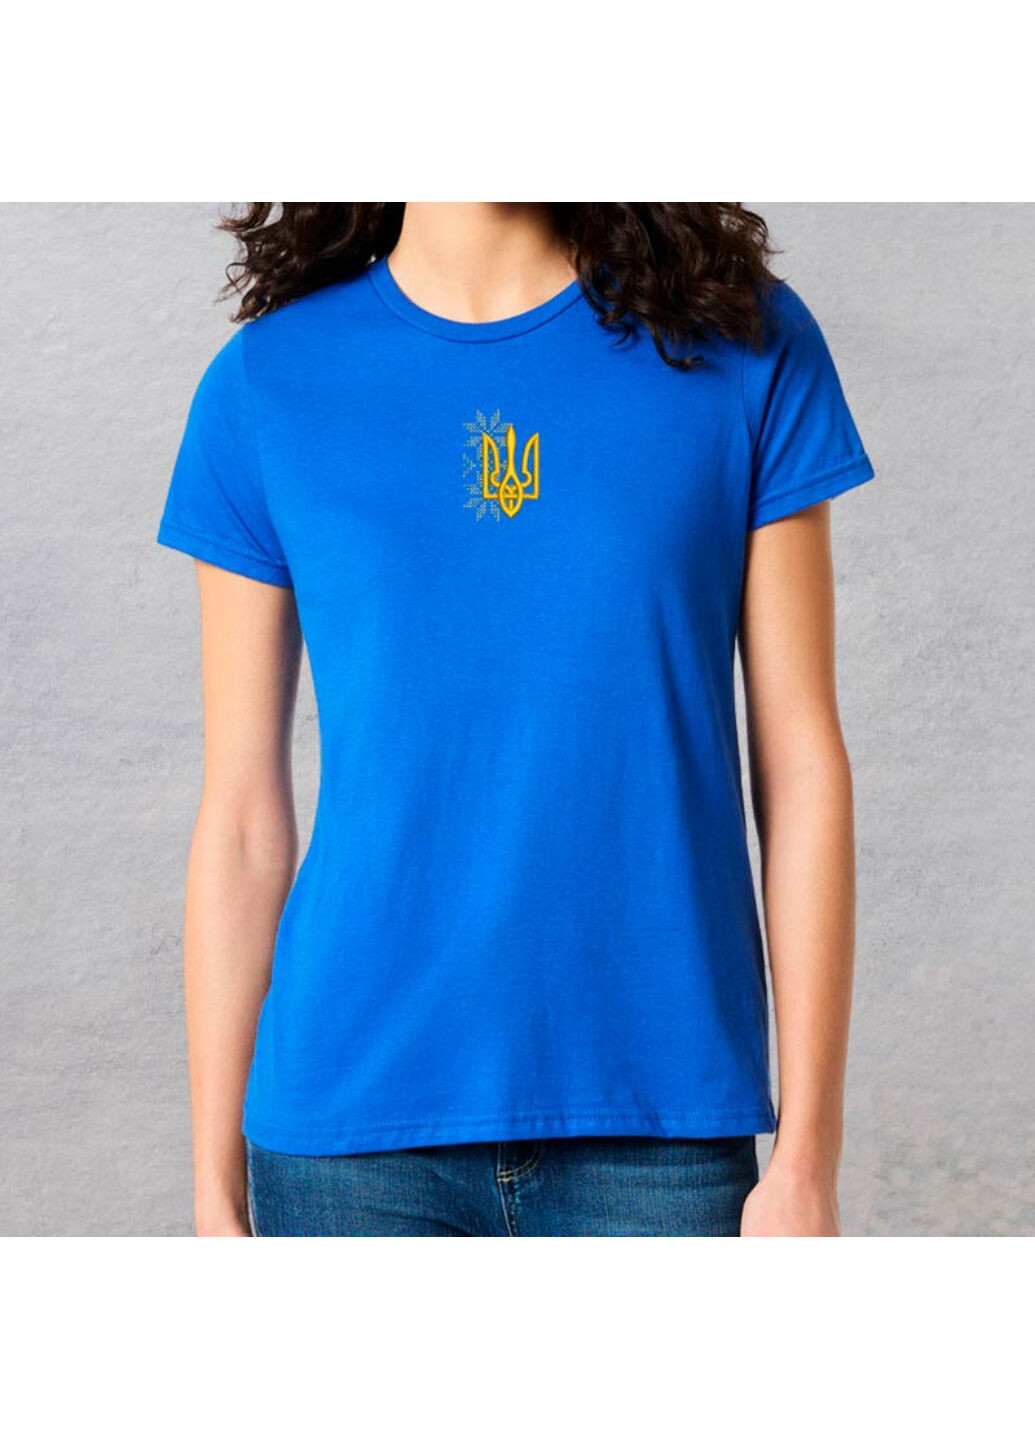 Синяя футболка з вишивкою тризуба 02-3 женская синий xl No Brand